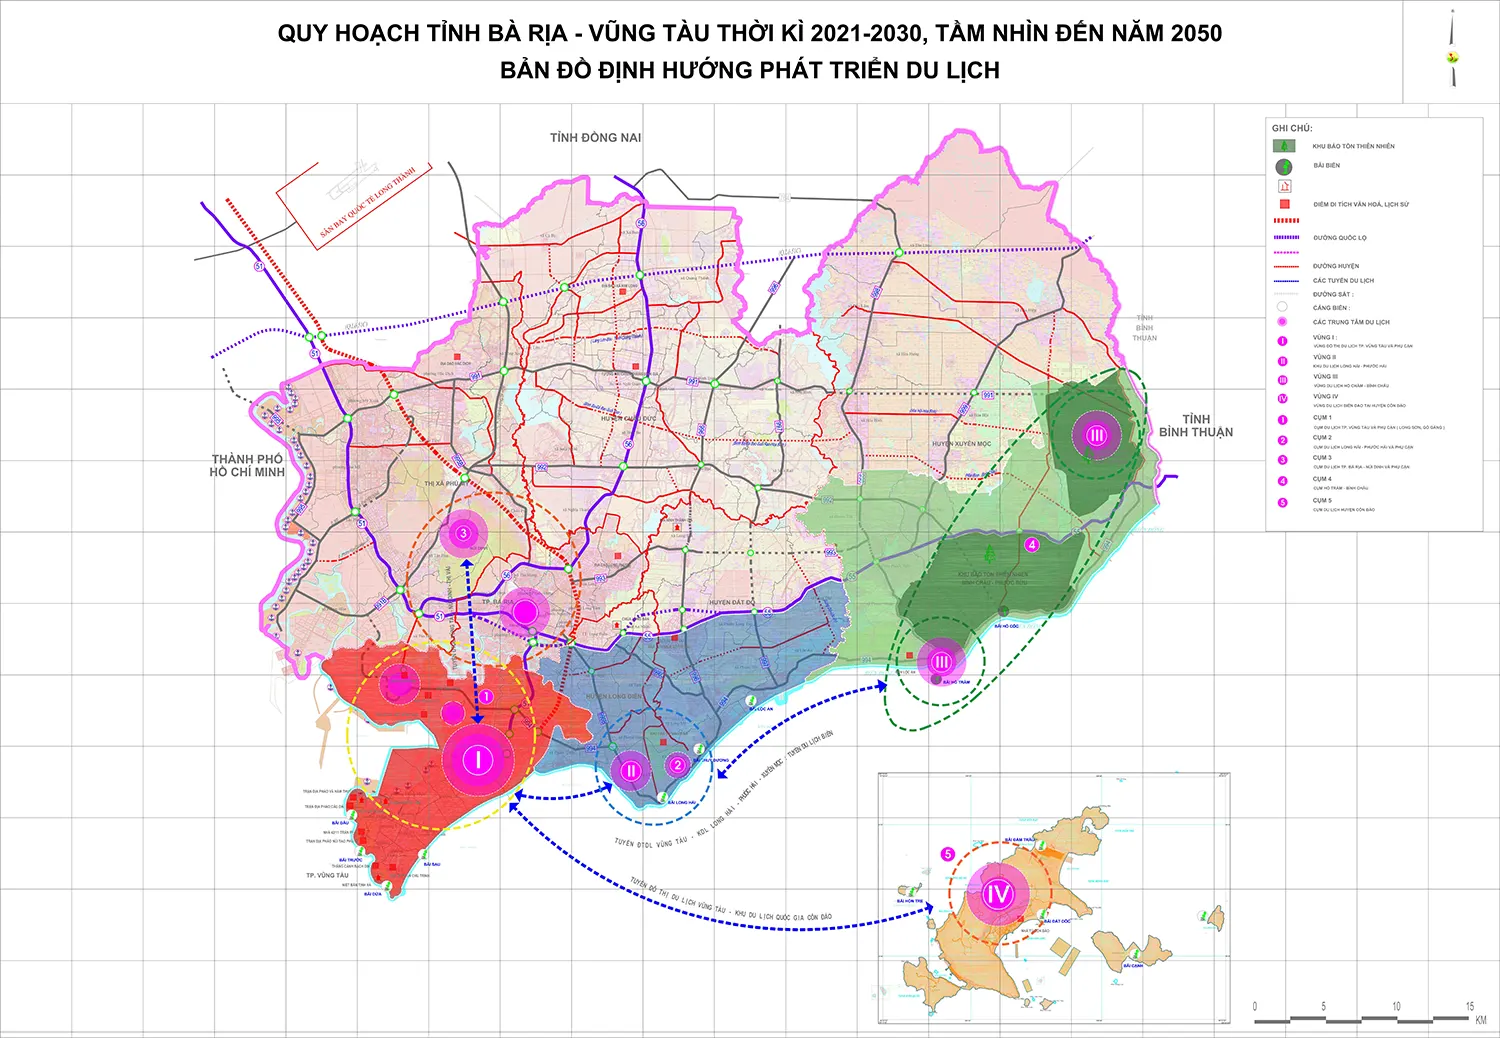 Bản đồ quy hoạch du lịch tỉnh Bà Rịa - Vũng Tàu đến năm 2030